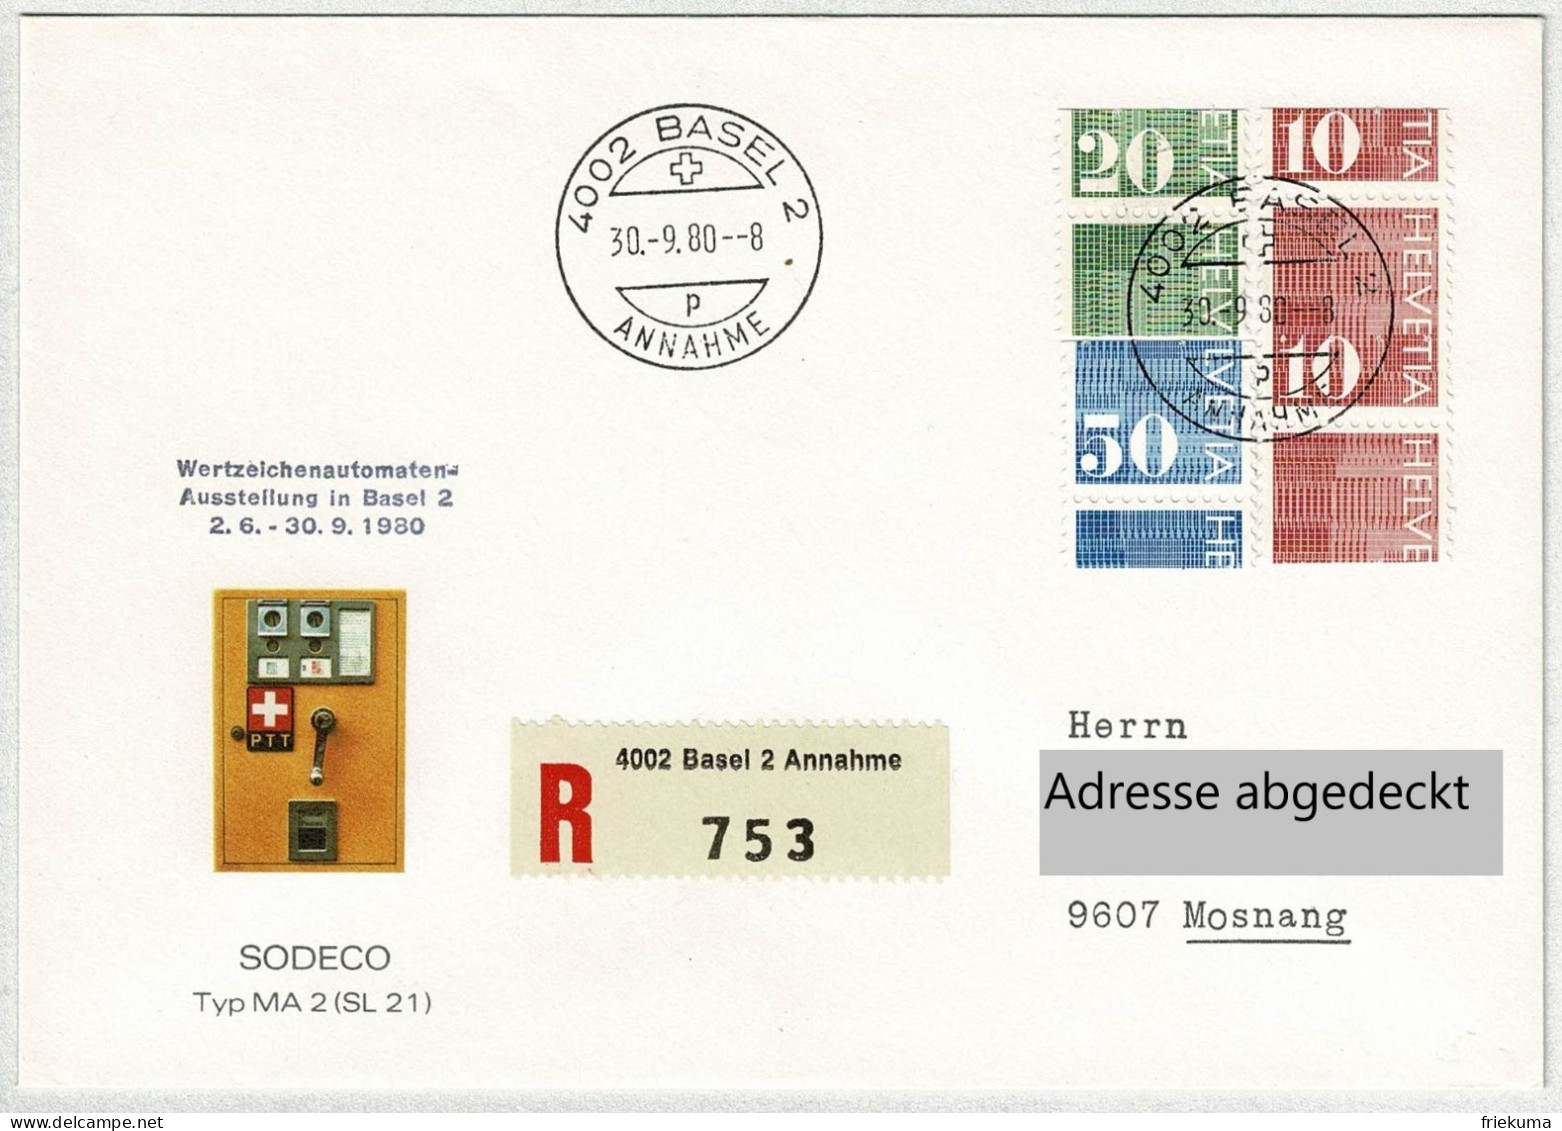 Schweiz 1980, Brief Einschreiben Wertzeichenautmaten-Ausstellung Basel - Mosnang, Ziffermarken Verschnitten / Error - Automatenmarken